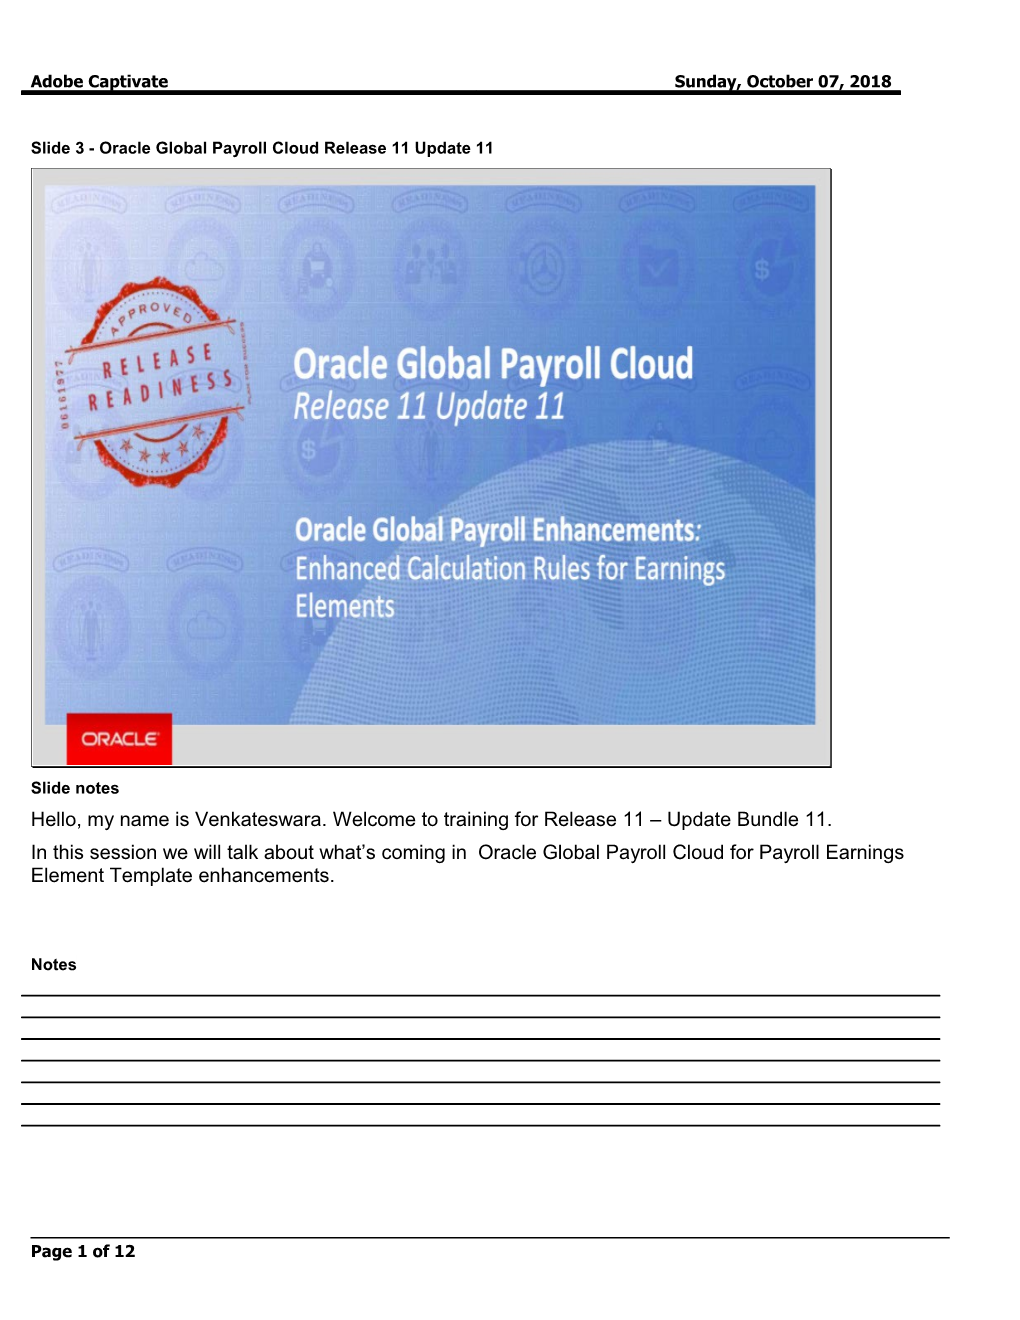 Slide 3 - Oracle Global Payroll Cloud Release 11 Update 11